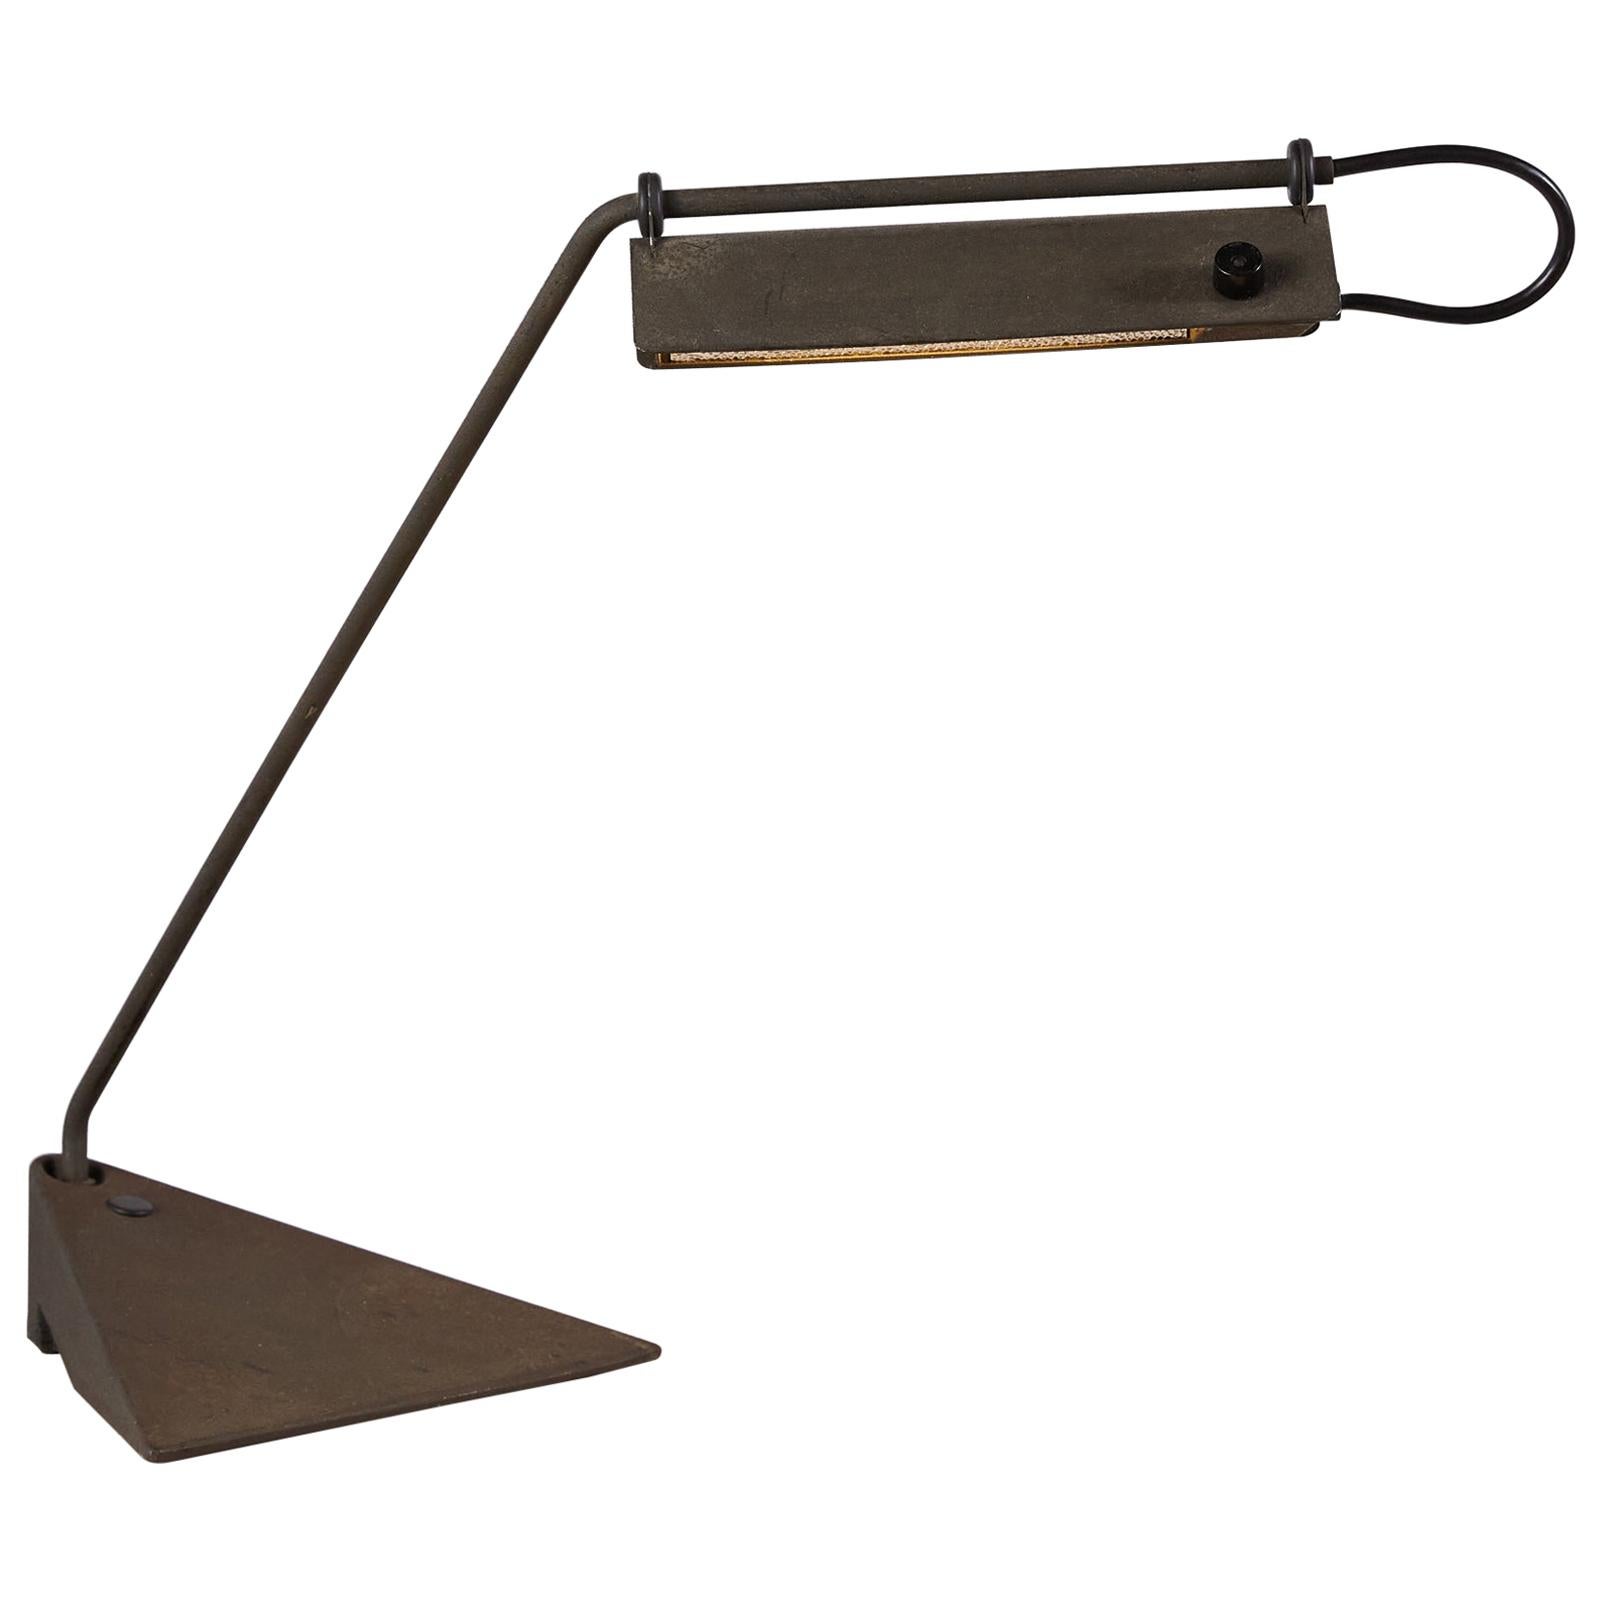 Koch & Lowy Desk Lamp